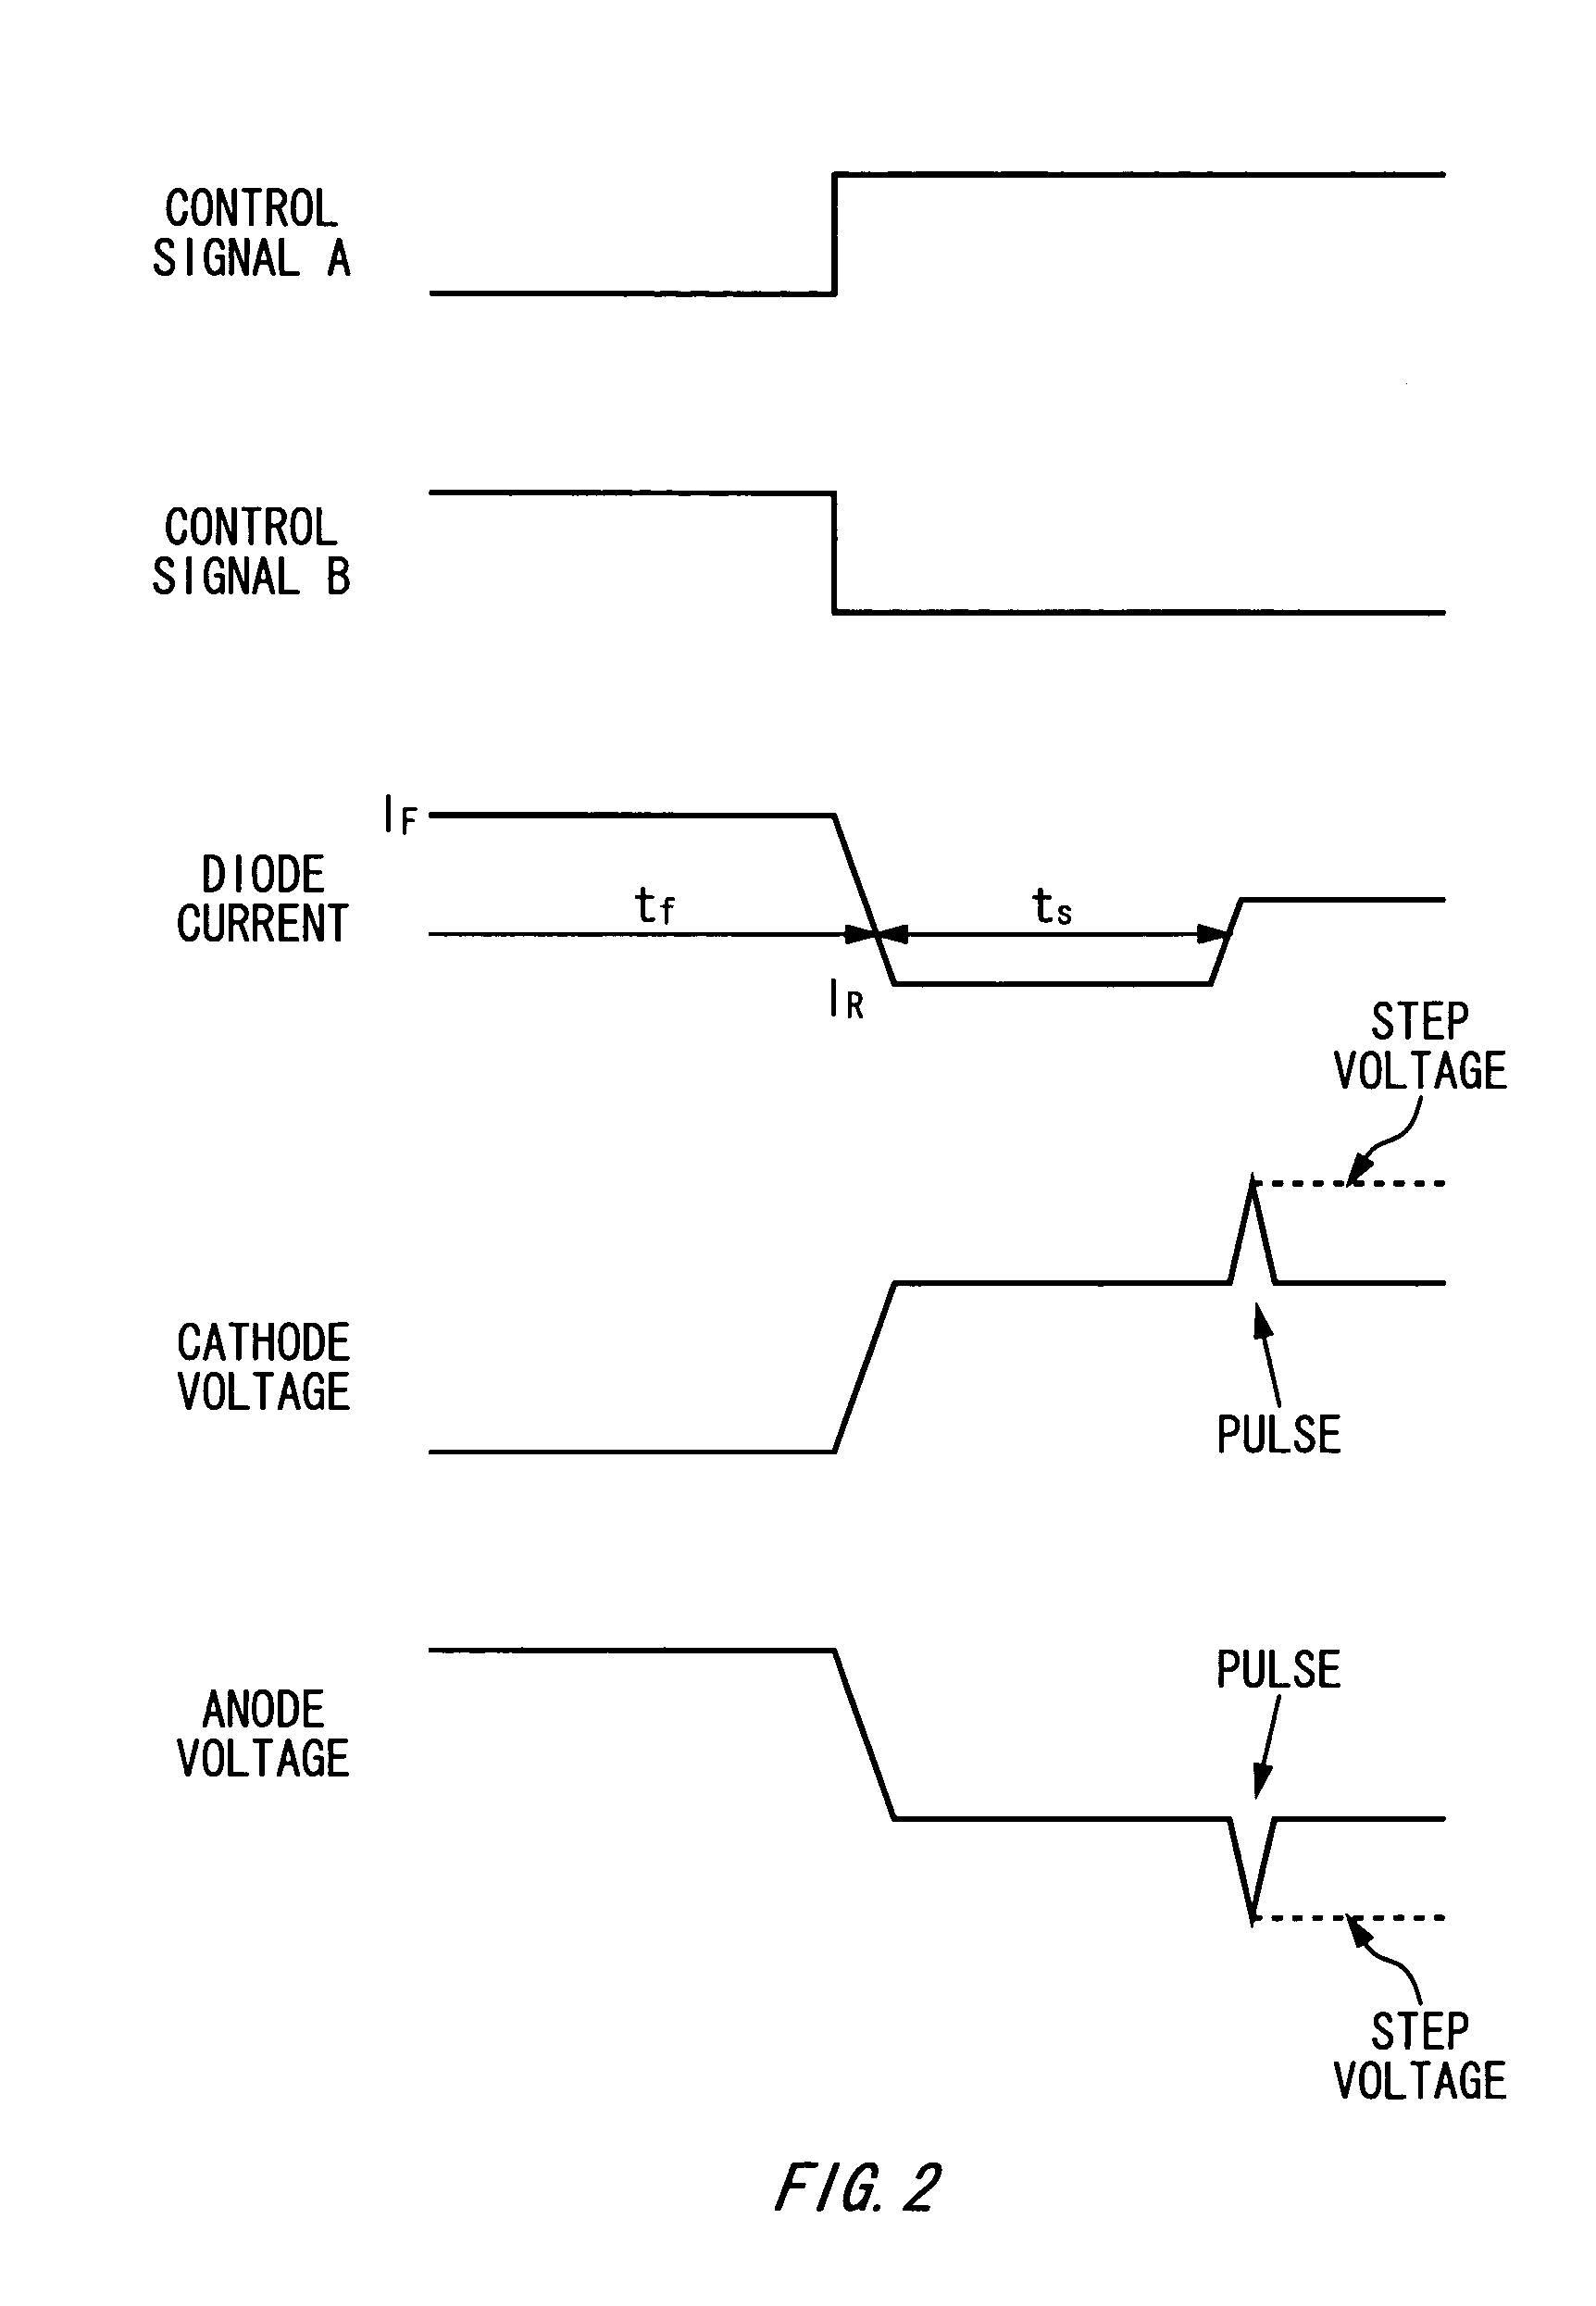 Pulse generating circuit and sampling circuit